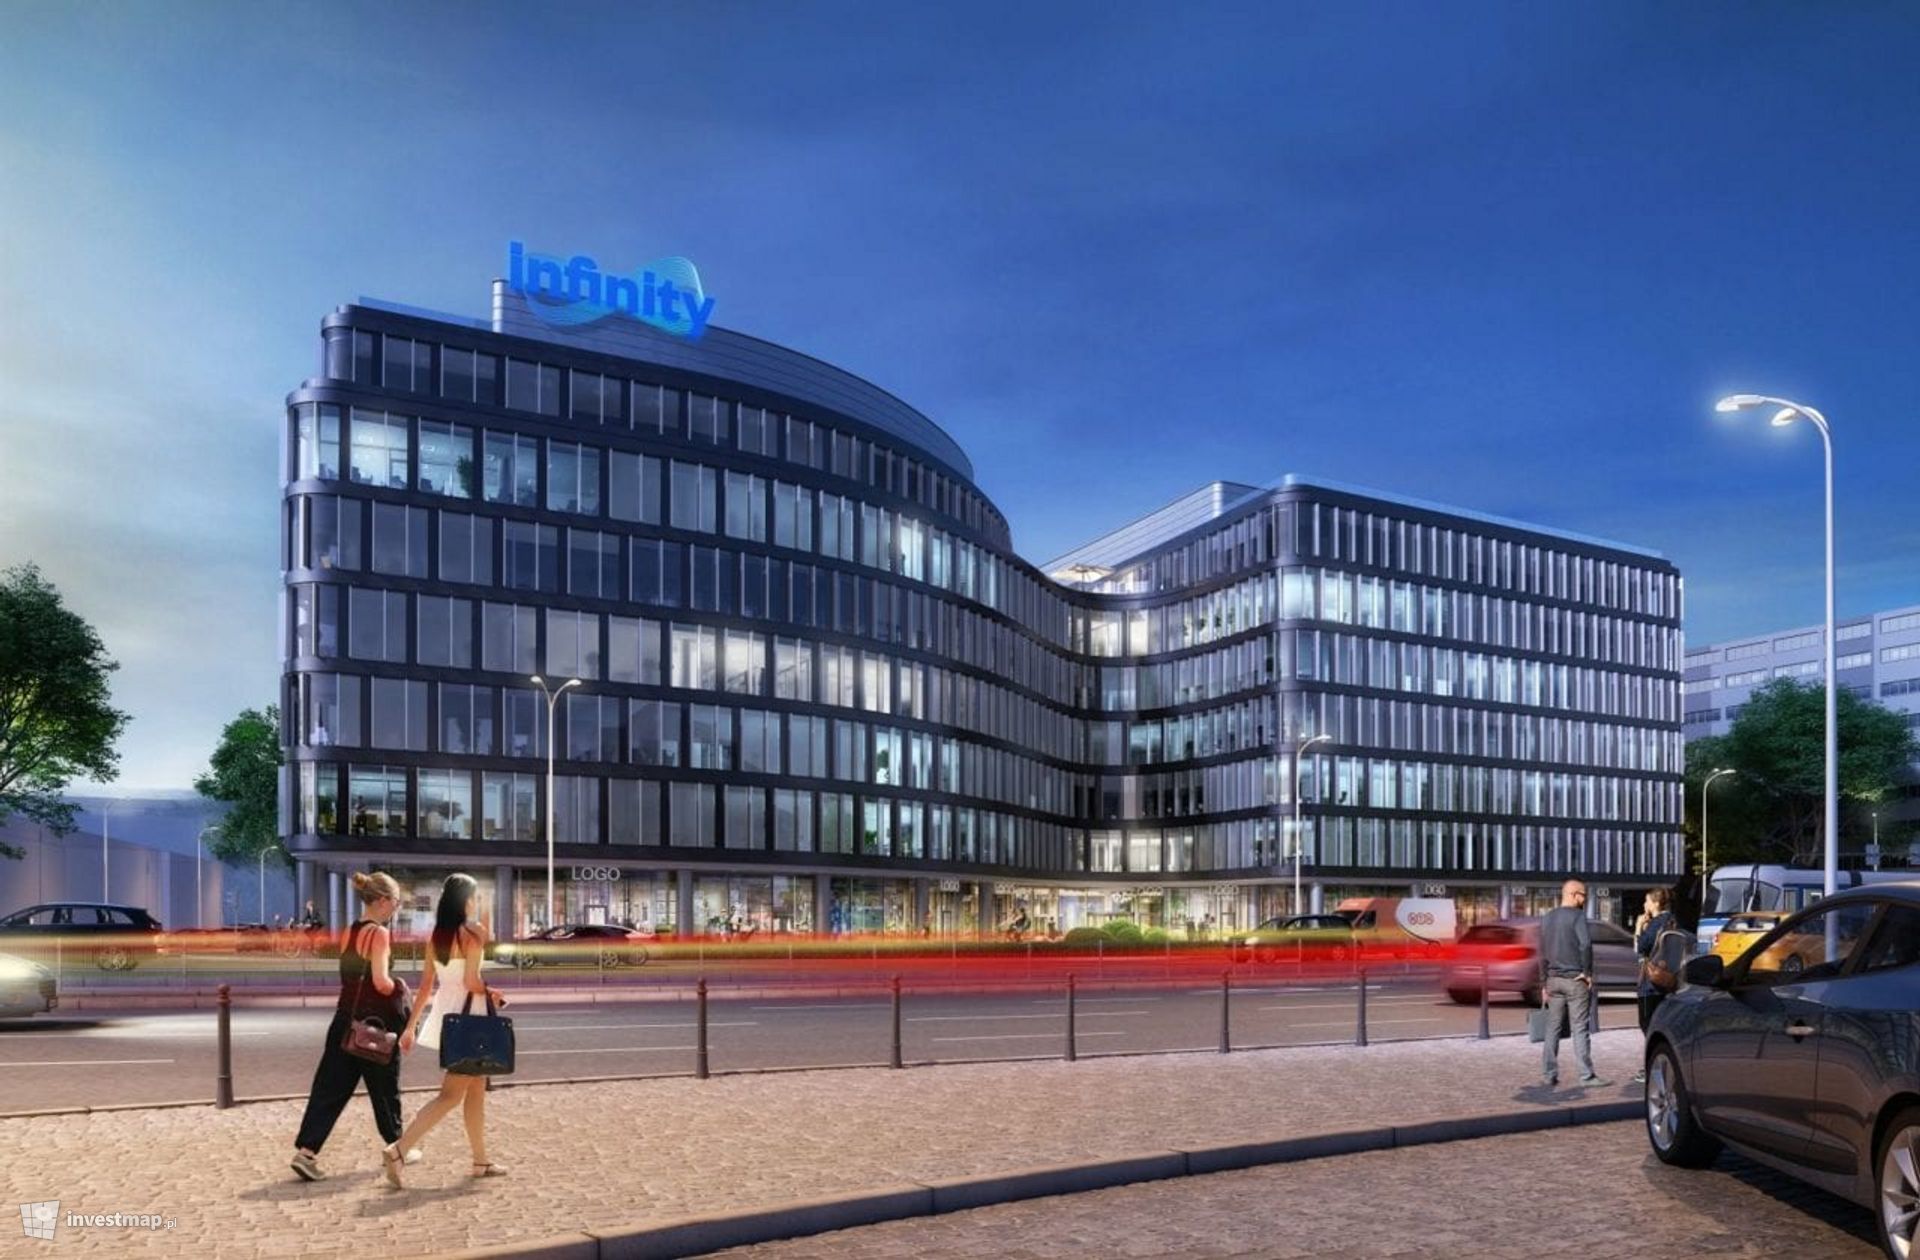 W centrum Wrocławia powstaje nowy biurowiec Infinity 